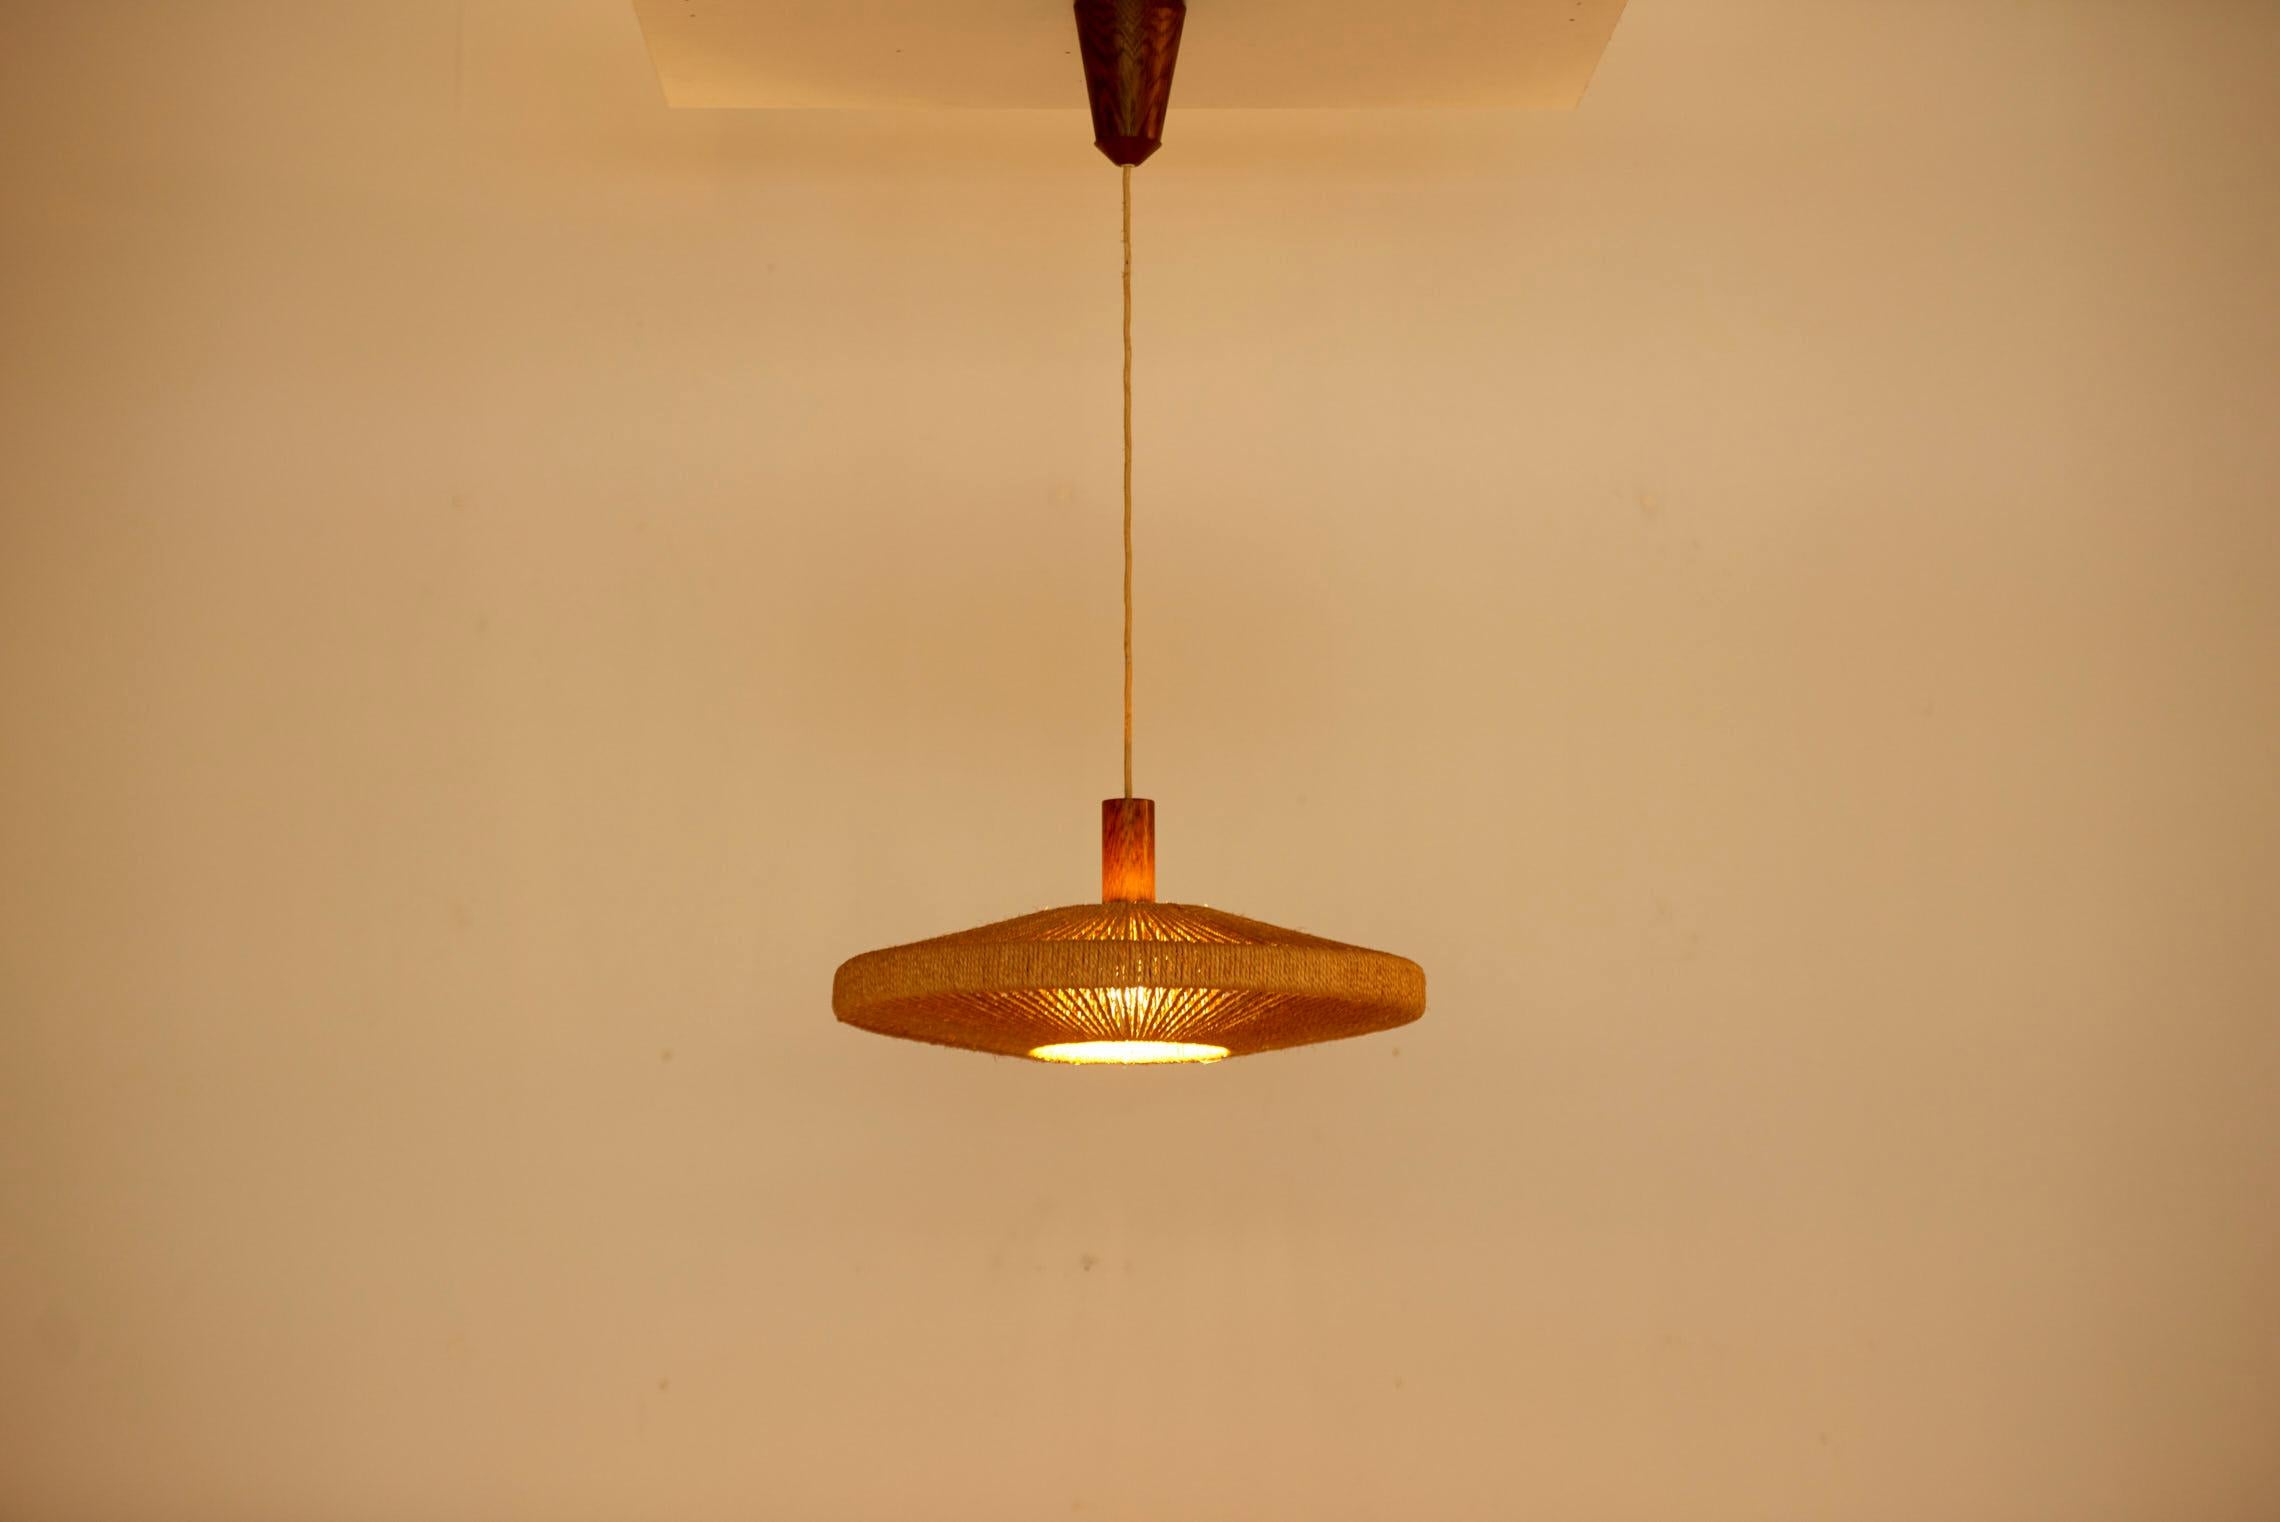 Große Temde Leuchten Sisal Pendelleuchte, Schweiz, 1950er Jahre. Die angegebenen Maße für die Höhe beziehen sich auf die Höhe des Schirms. 1x Modell A / E27 Glühbirne. Bitte beachten Sie: Die Leuchte sollte fachgerecht und entsprechend den örtlichen